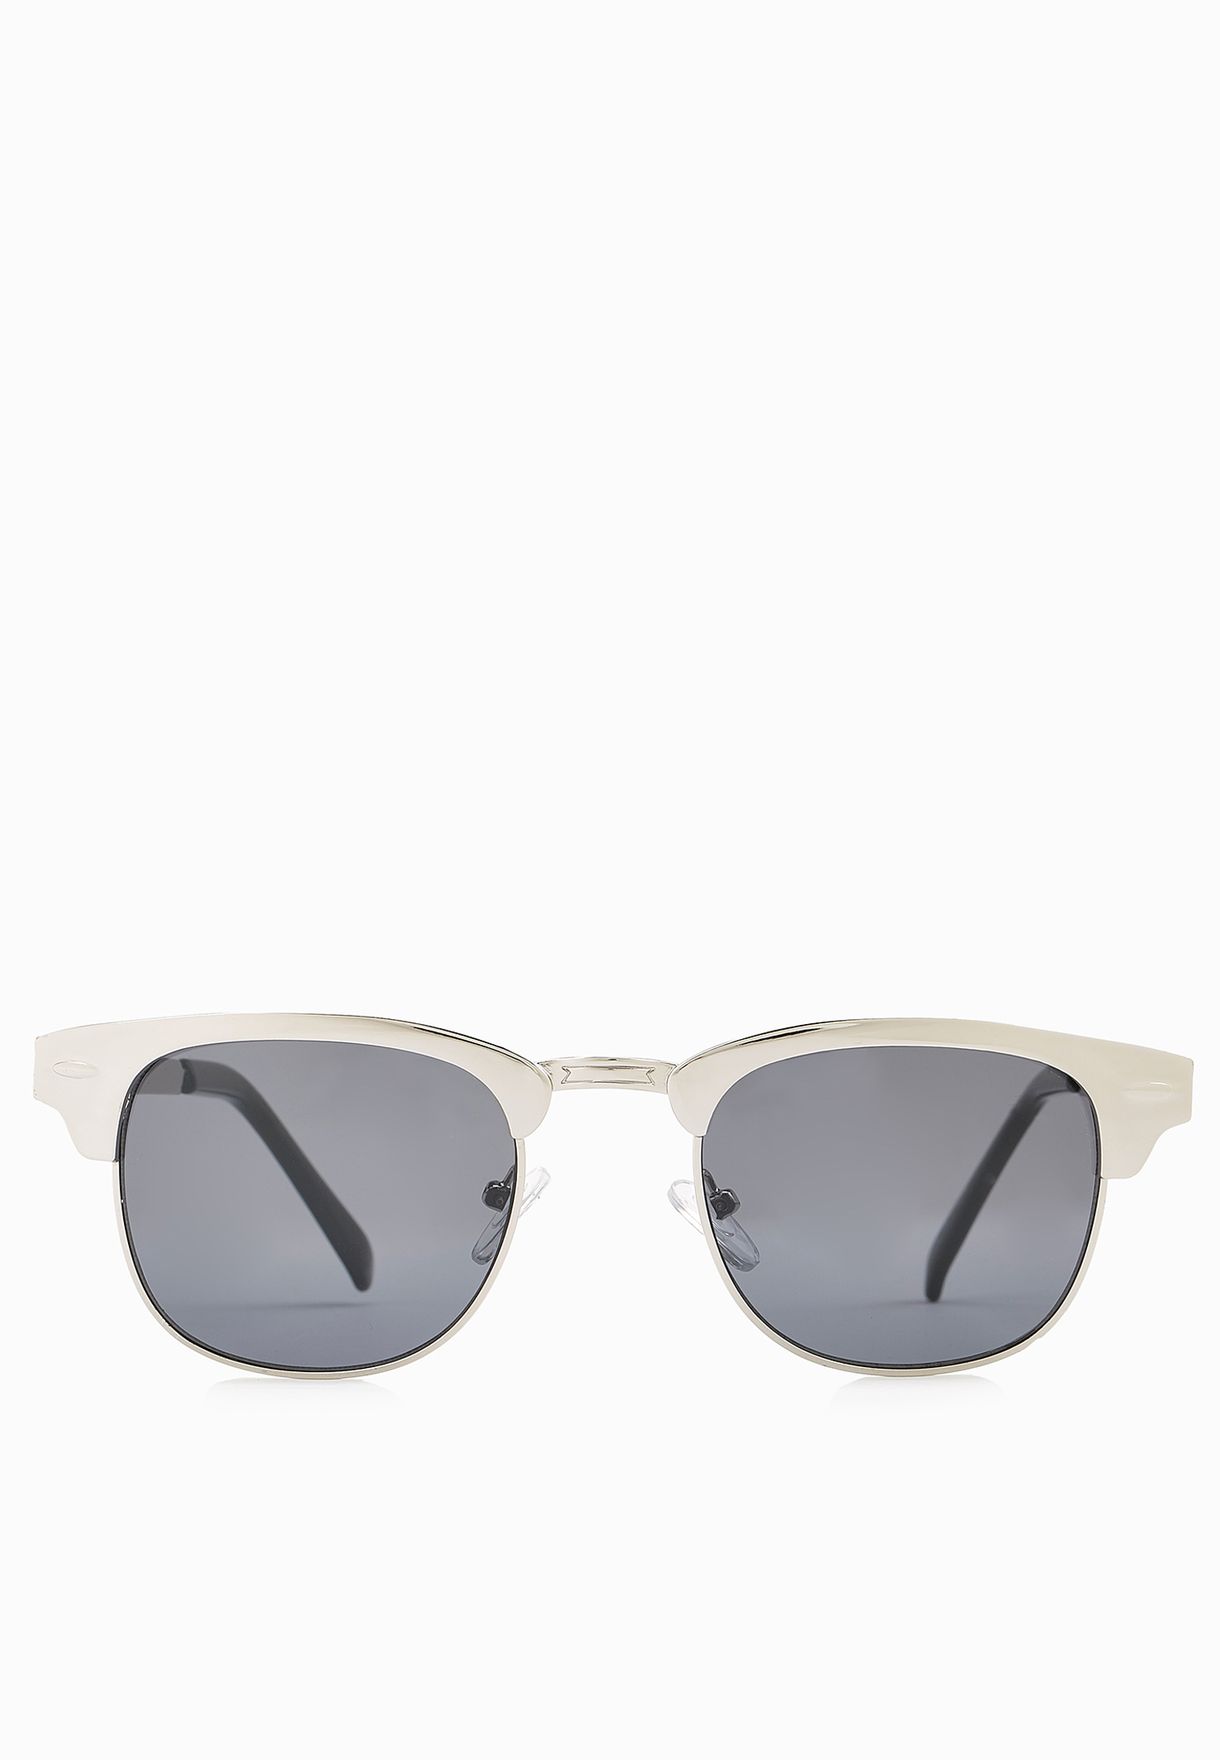 silver clubmaster sunglasses